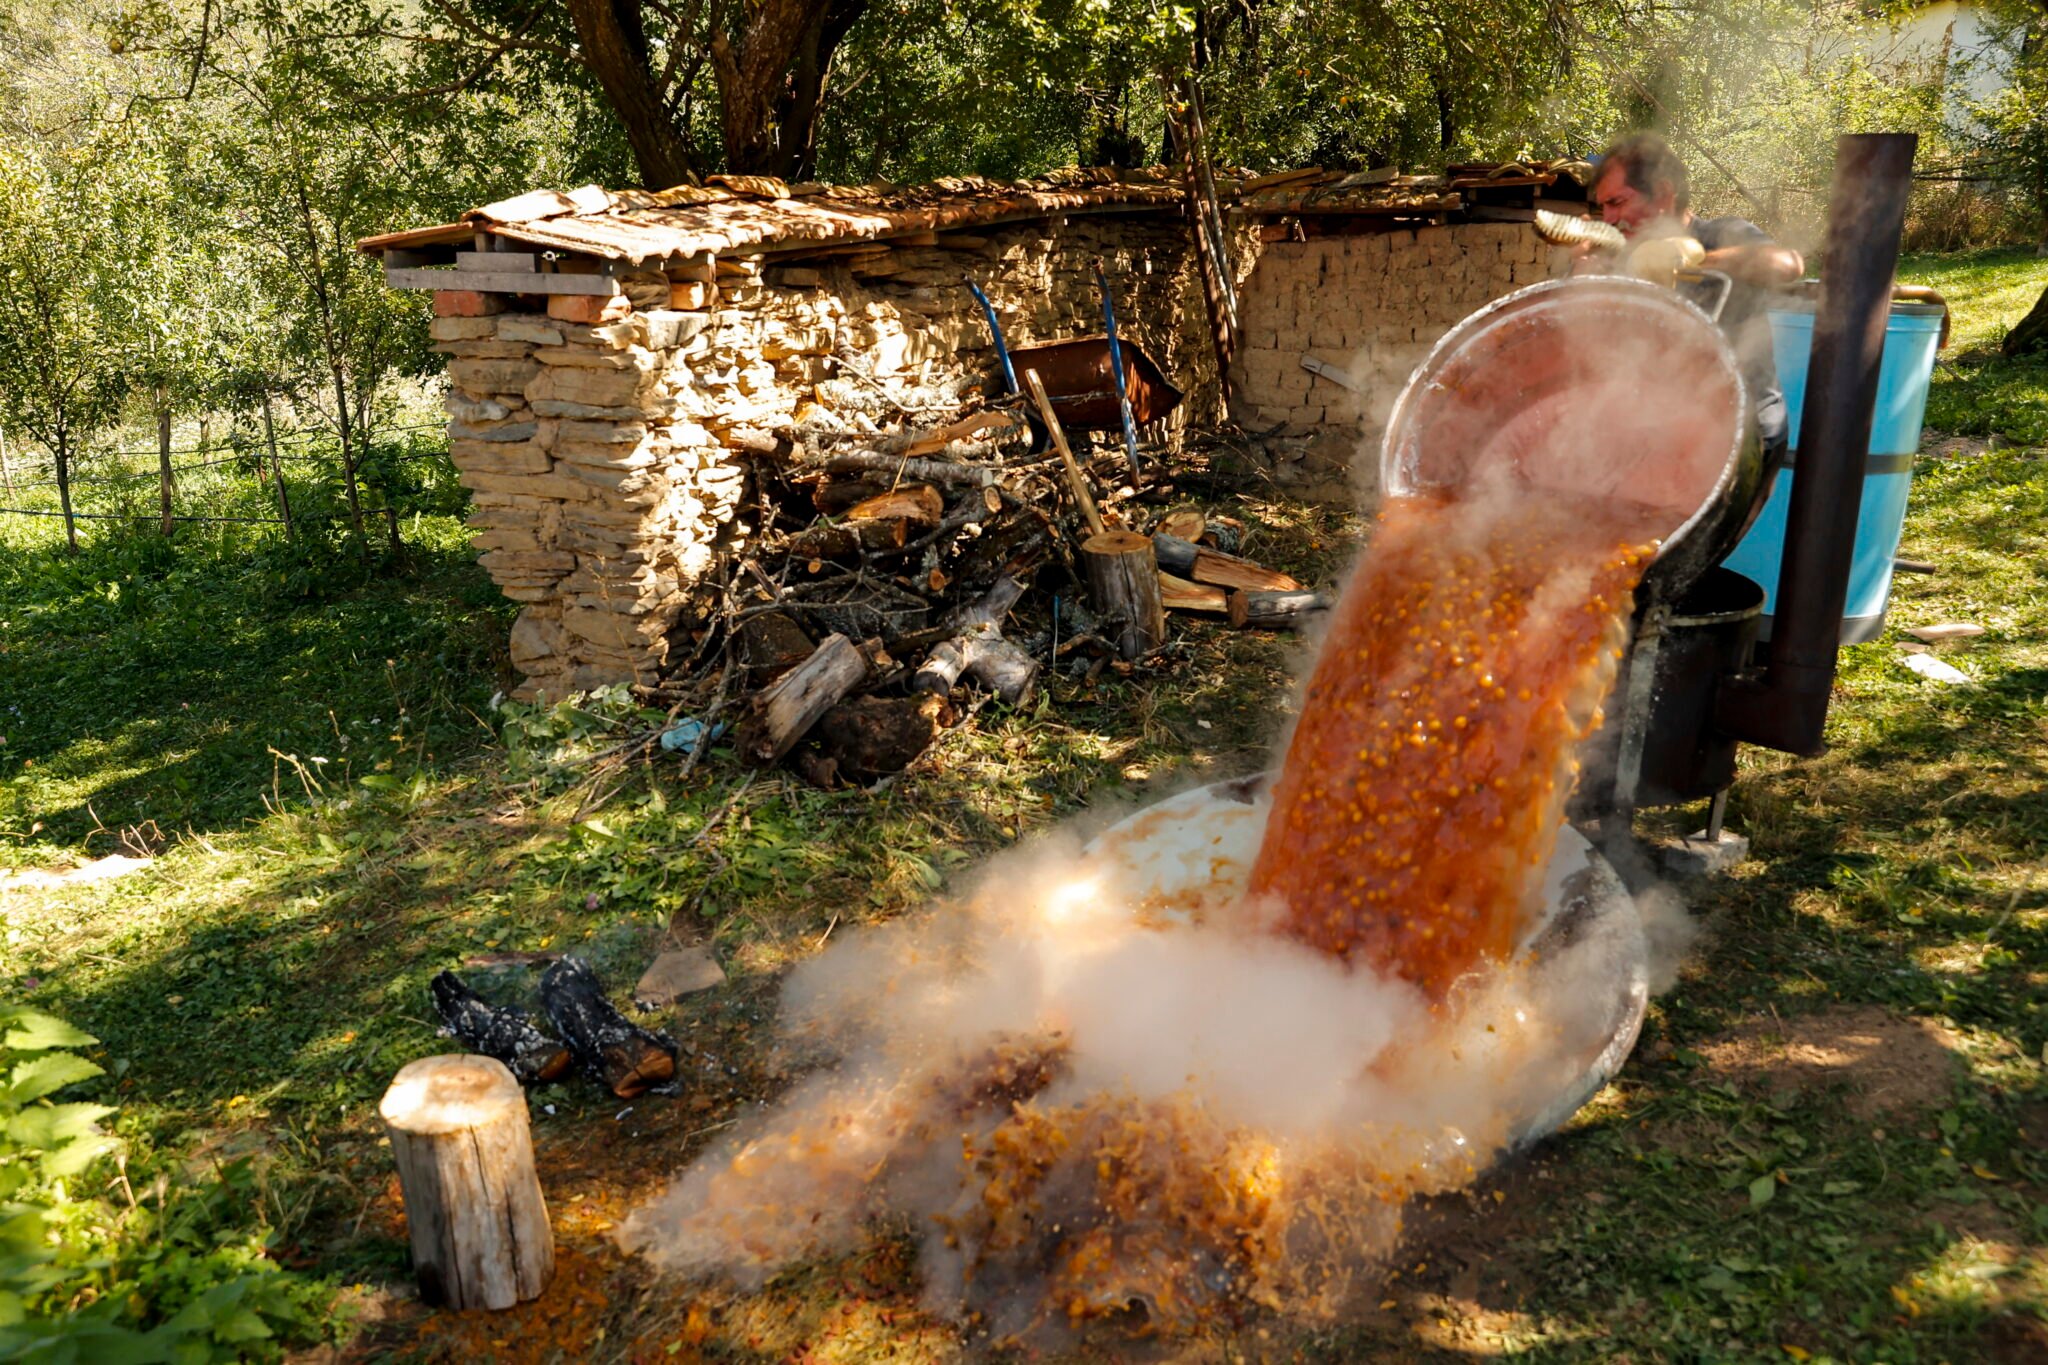  Kosowo: mężczyzna przyrządza brandy domowej roboty ze sfermentowanych dzikich śliwek, fot. EPA / VALDRIN XHEMAJ 